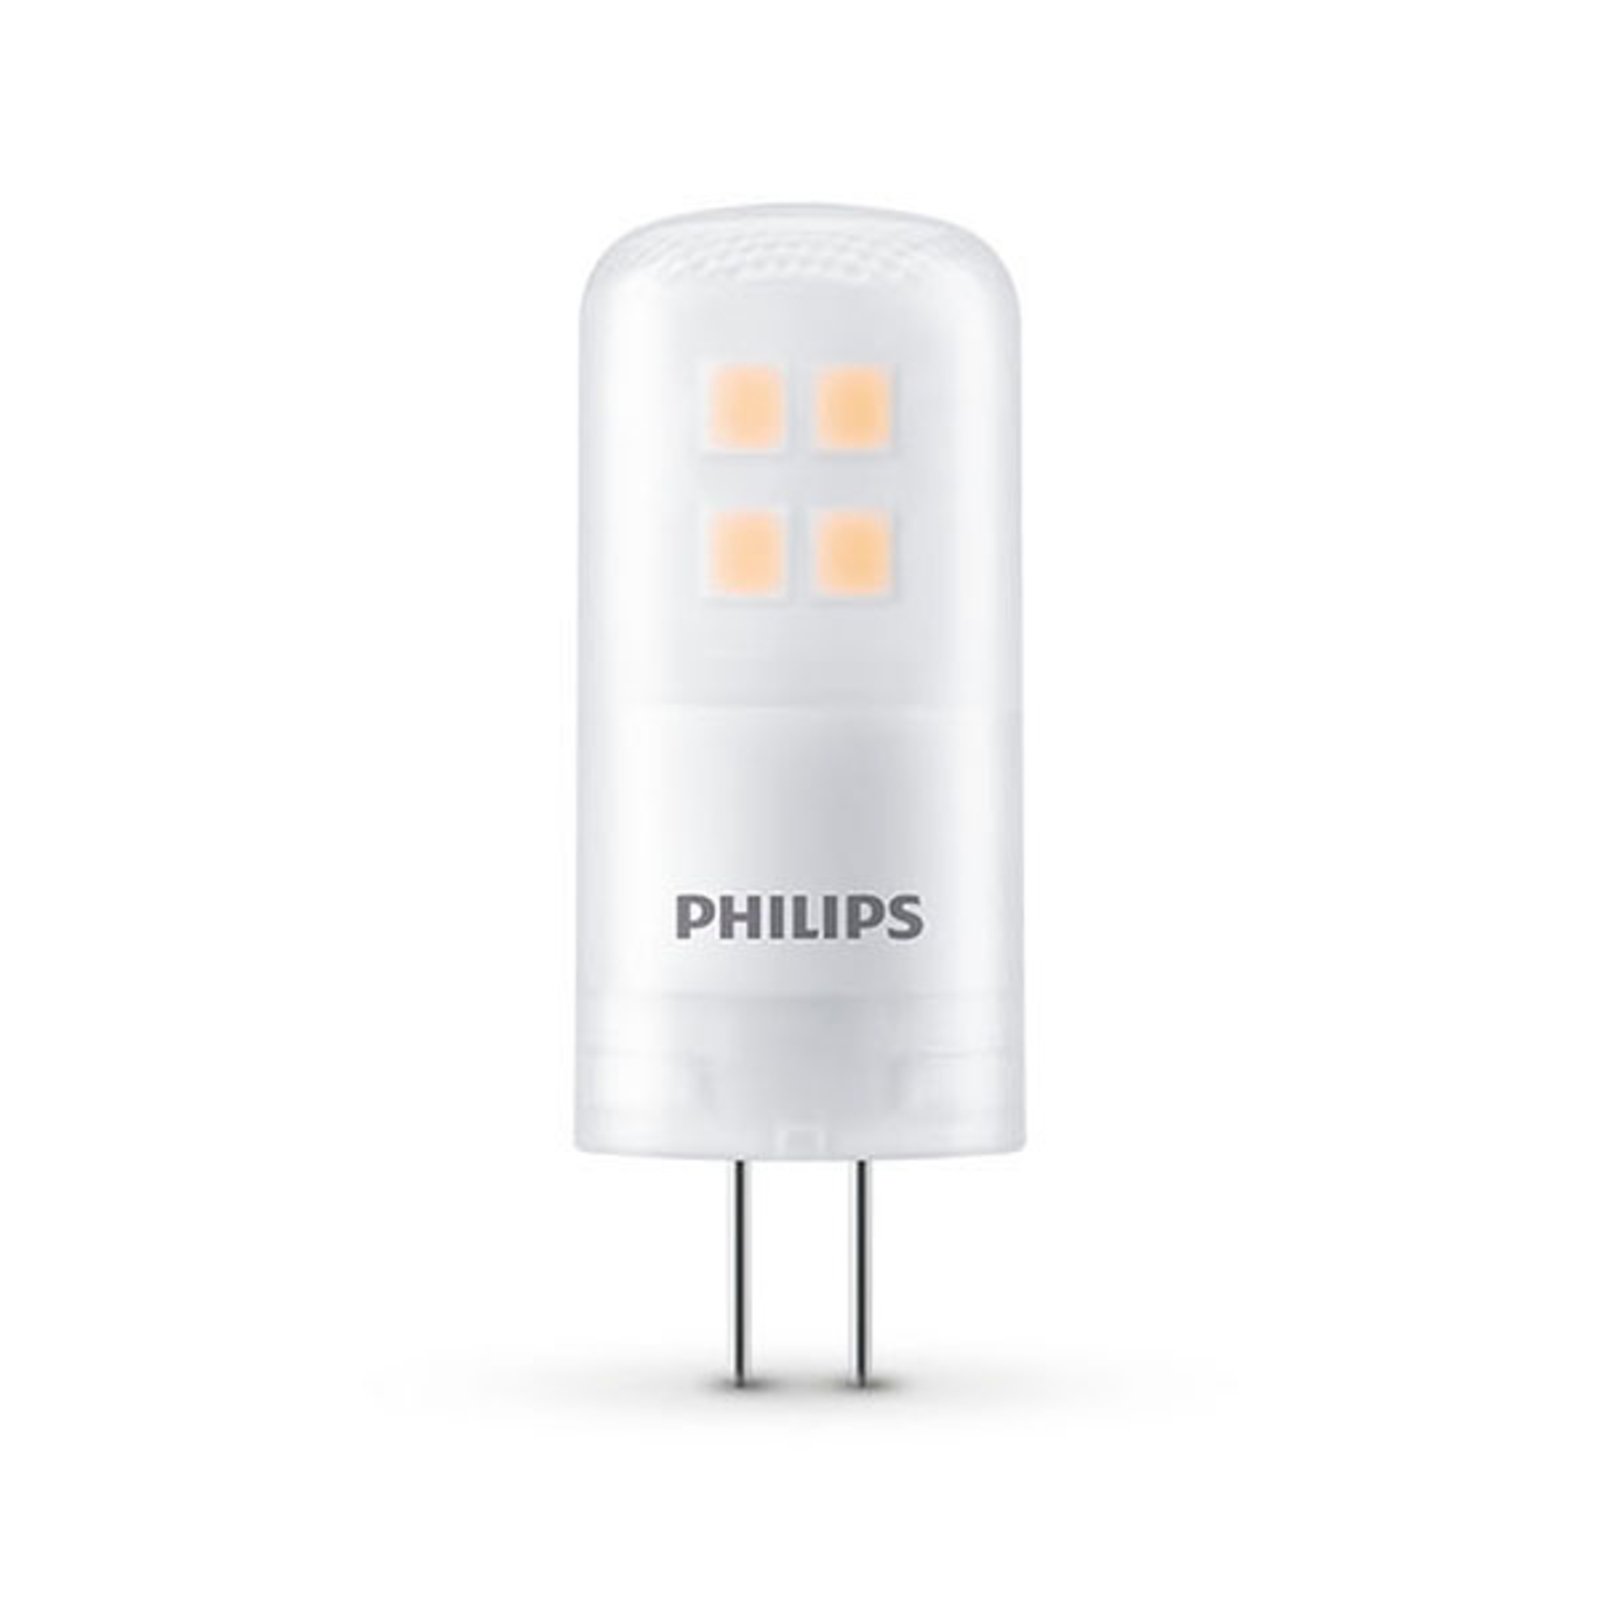 Philips LED pinová žárovka G4 2,7W 2700K matná